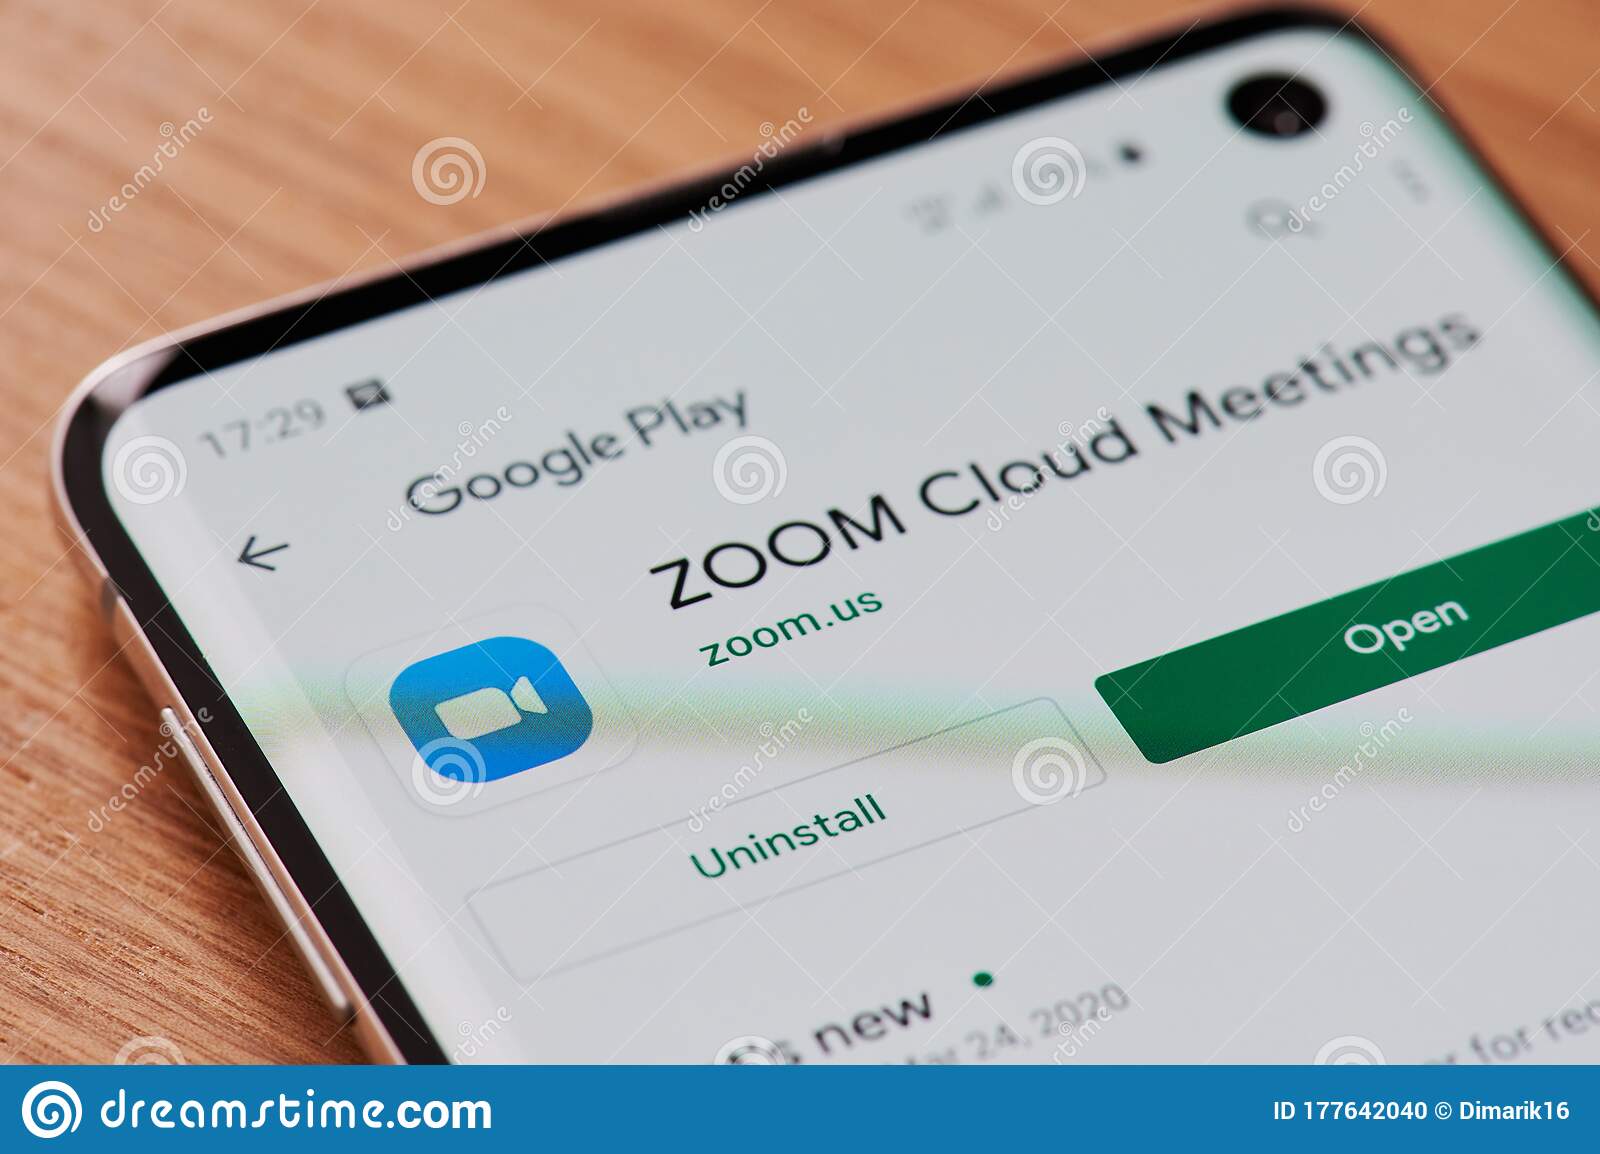 z00m cloud meeting app